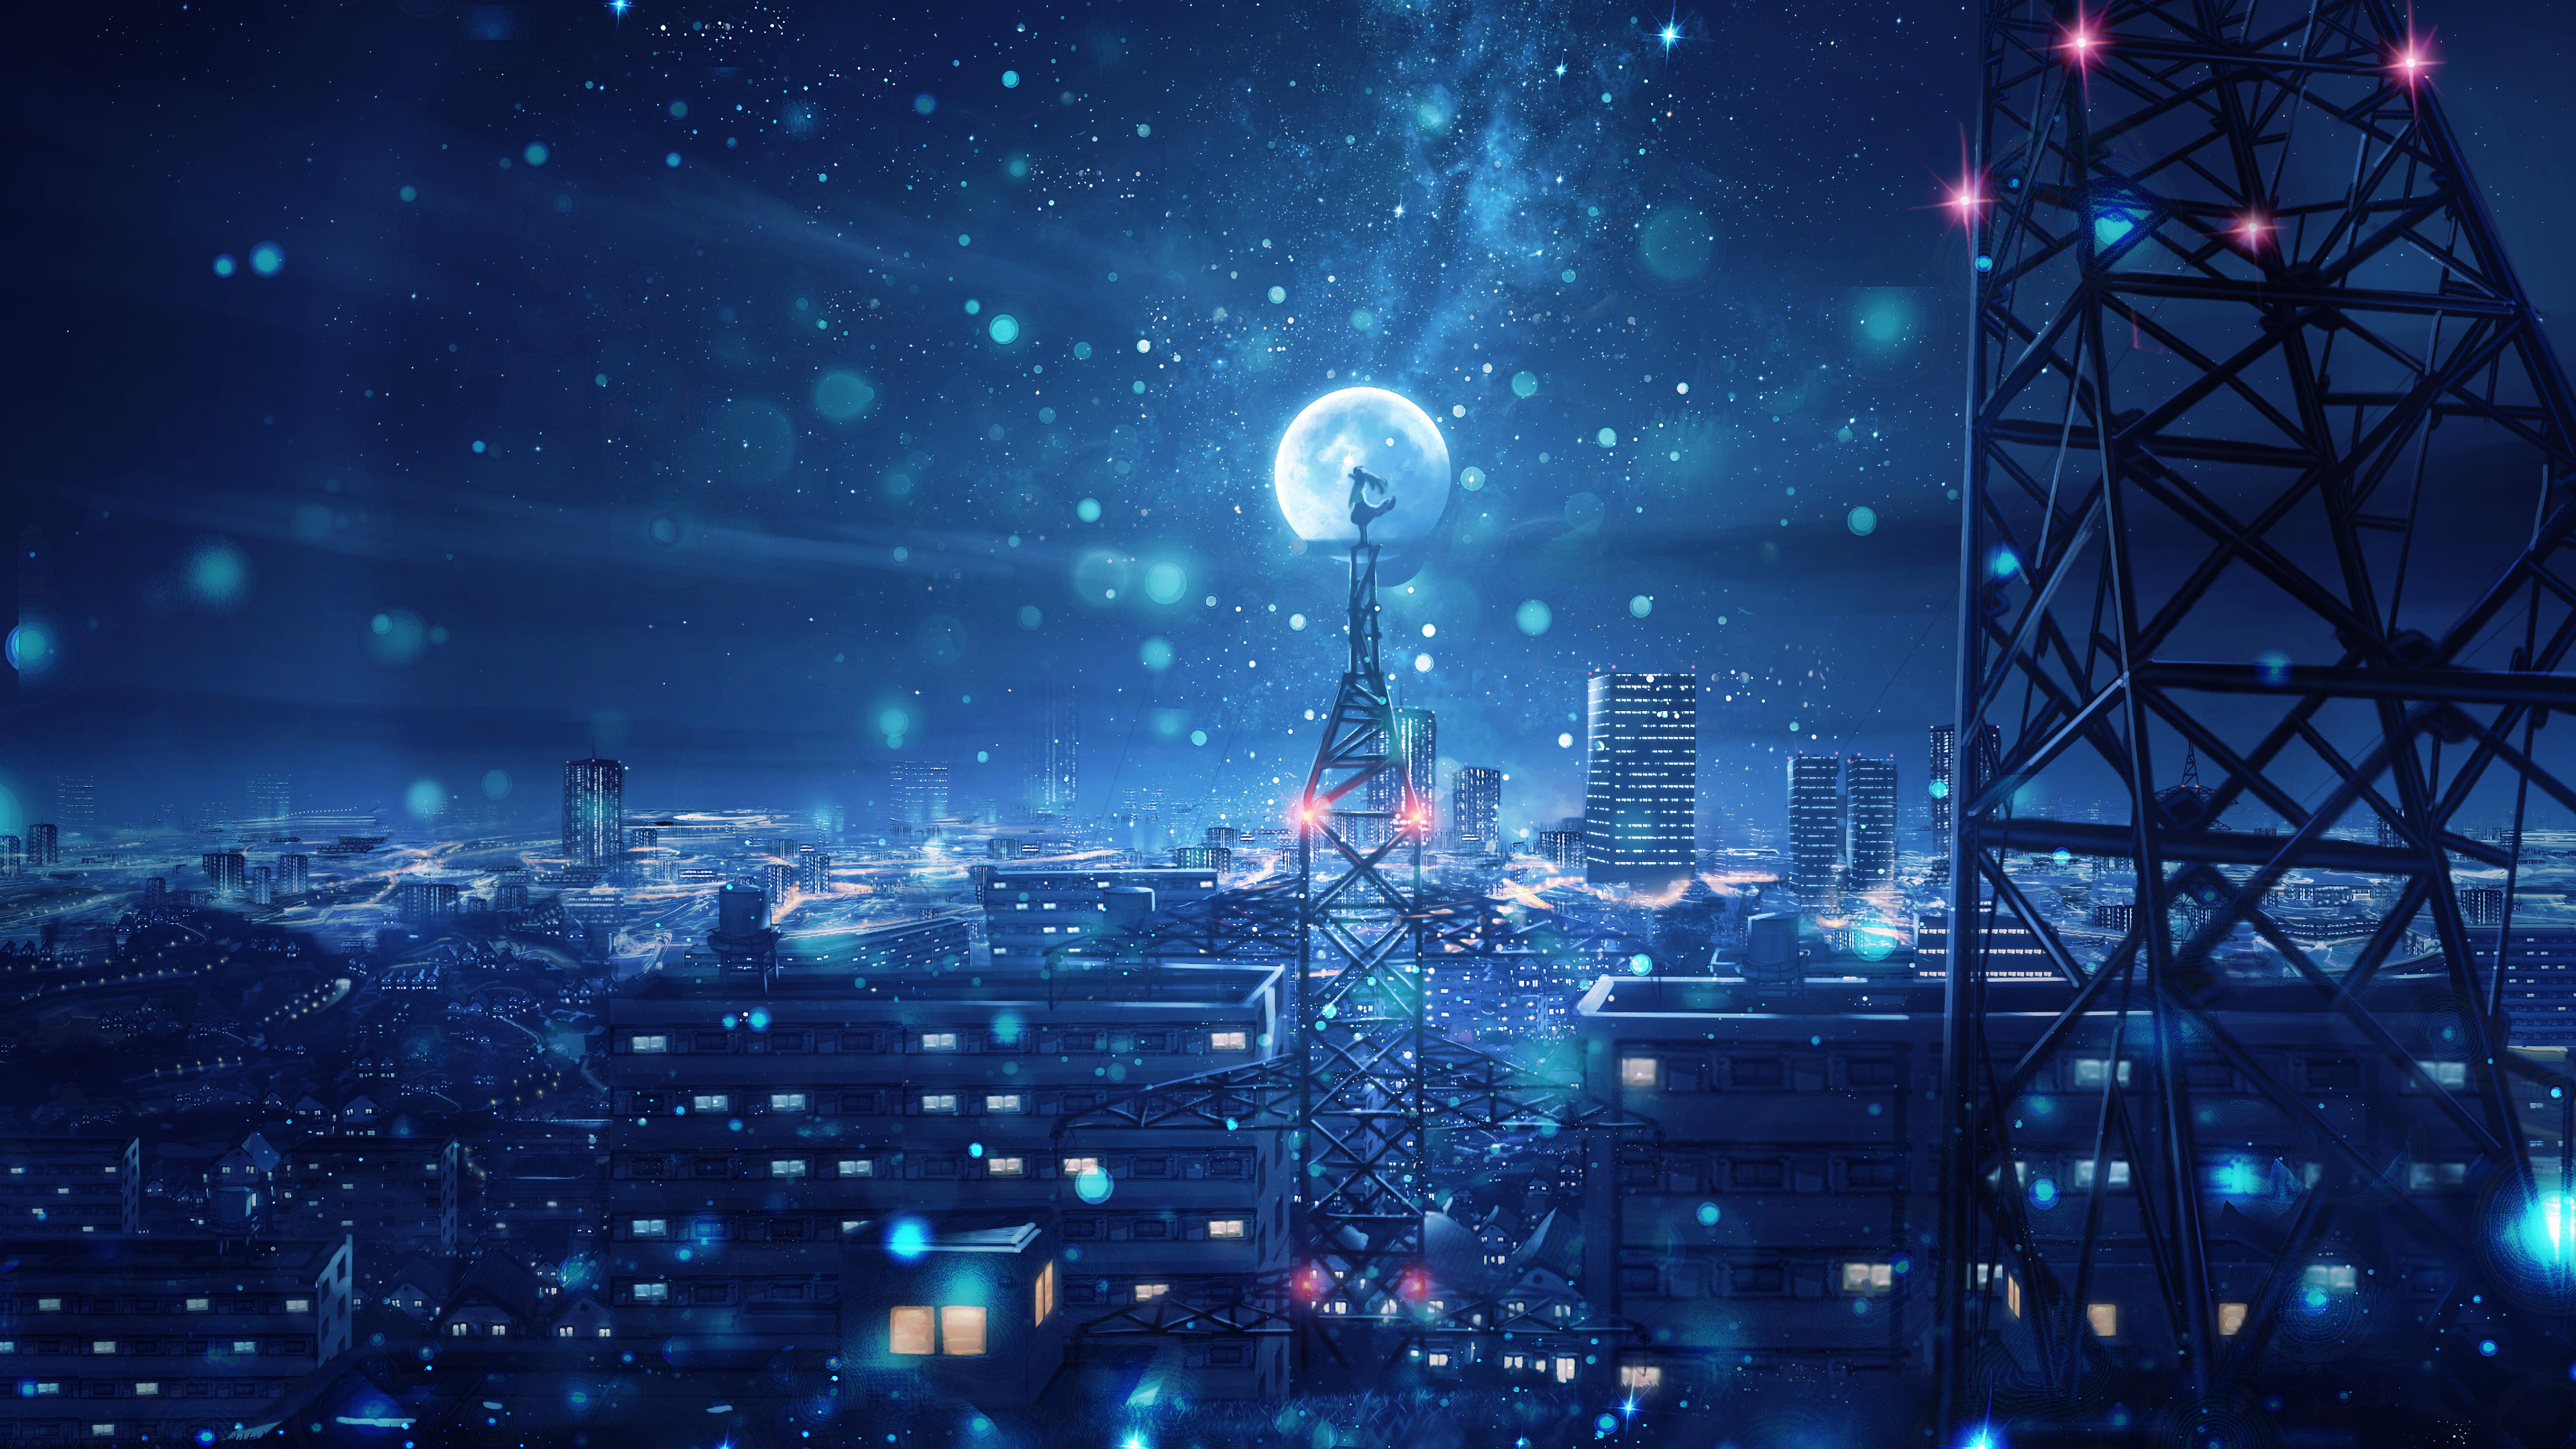 Hãy dành chút thời gian của bạn để thưởng thức bức ảnh Anime Night City Wallpaper tuyệt đẹp này và cảm nhận sự tinh tế và bắt mắt của vẻ đẹp đô thị đêm với các nhân vật hoạt hình đầy cá tính.